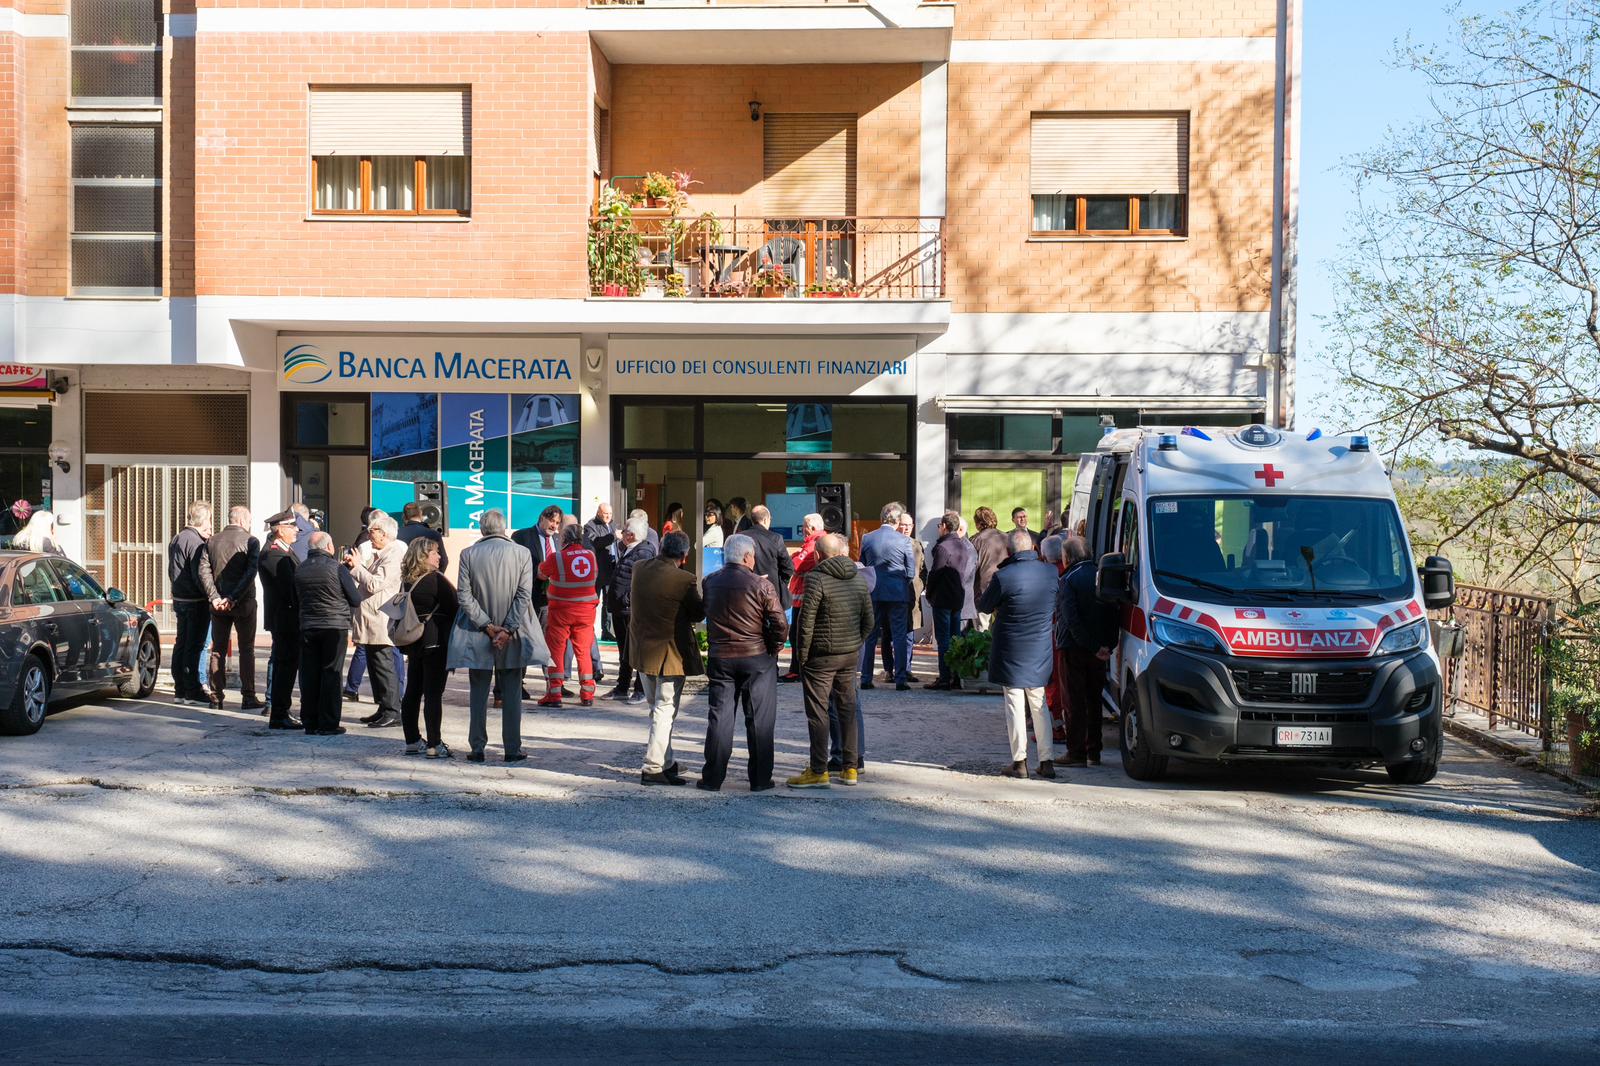 Banca Macerata arriva anche a Sarnano | Banca Macerata 8